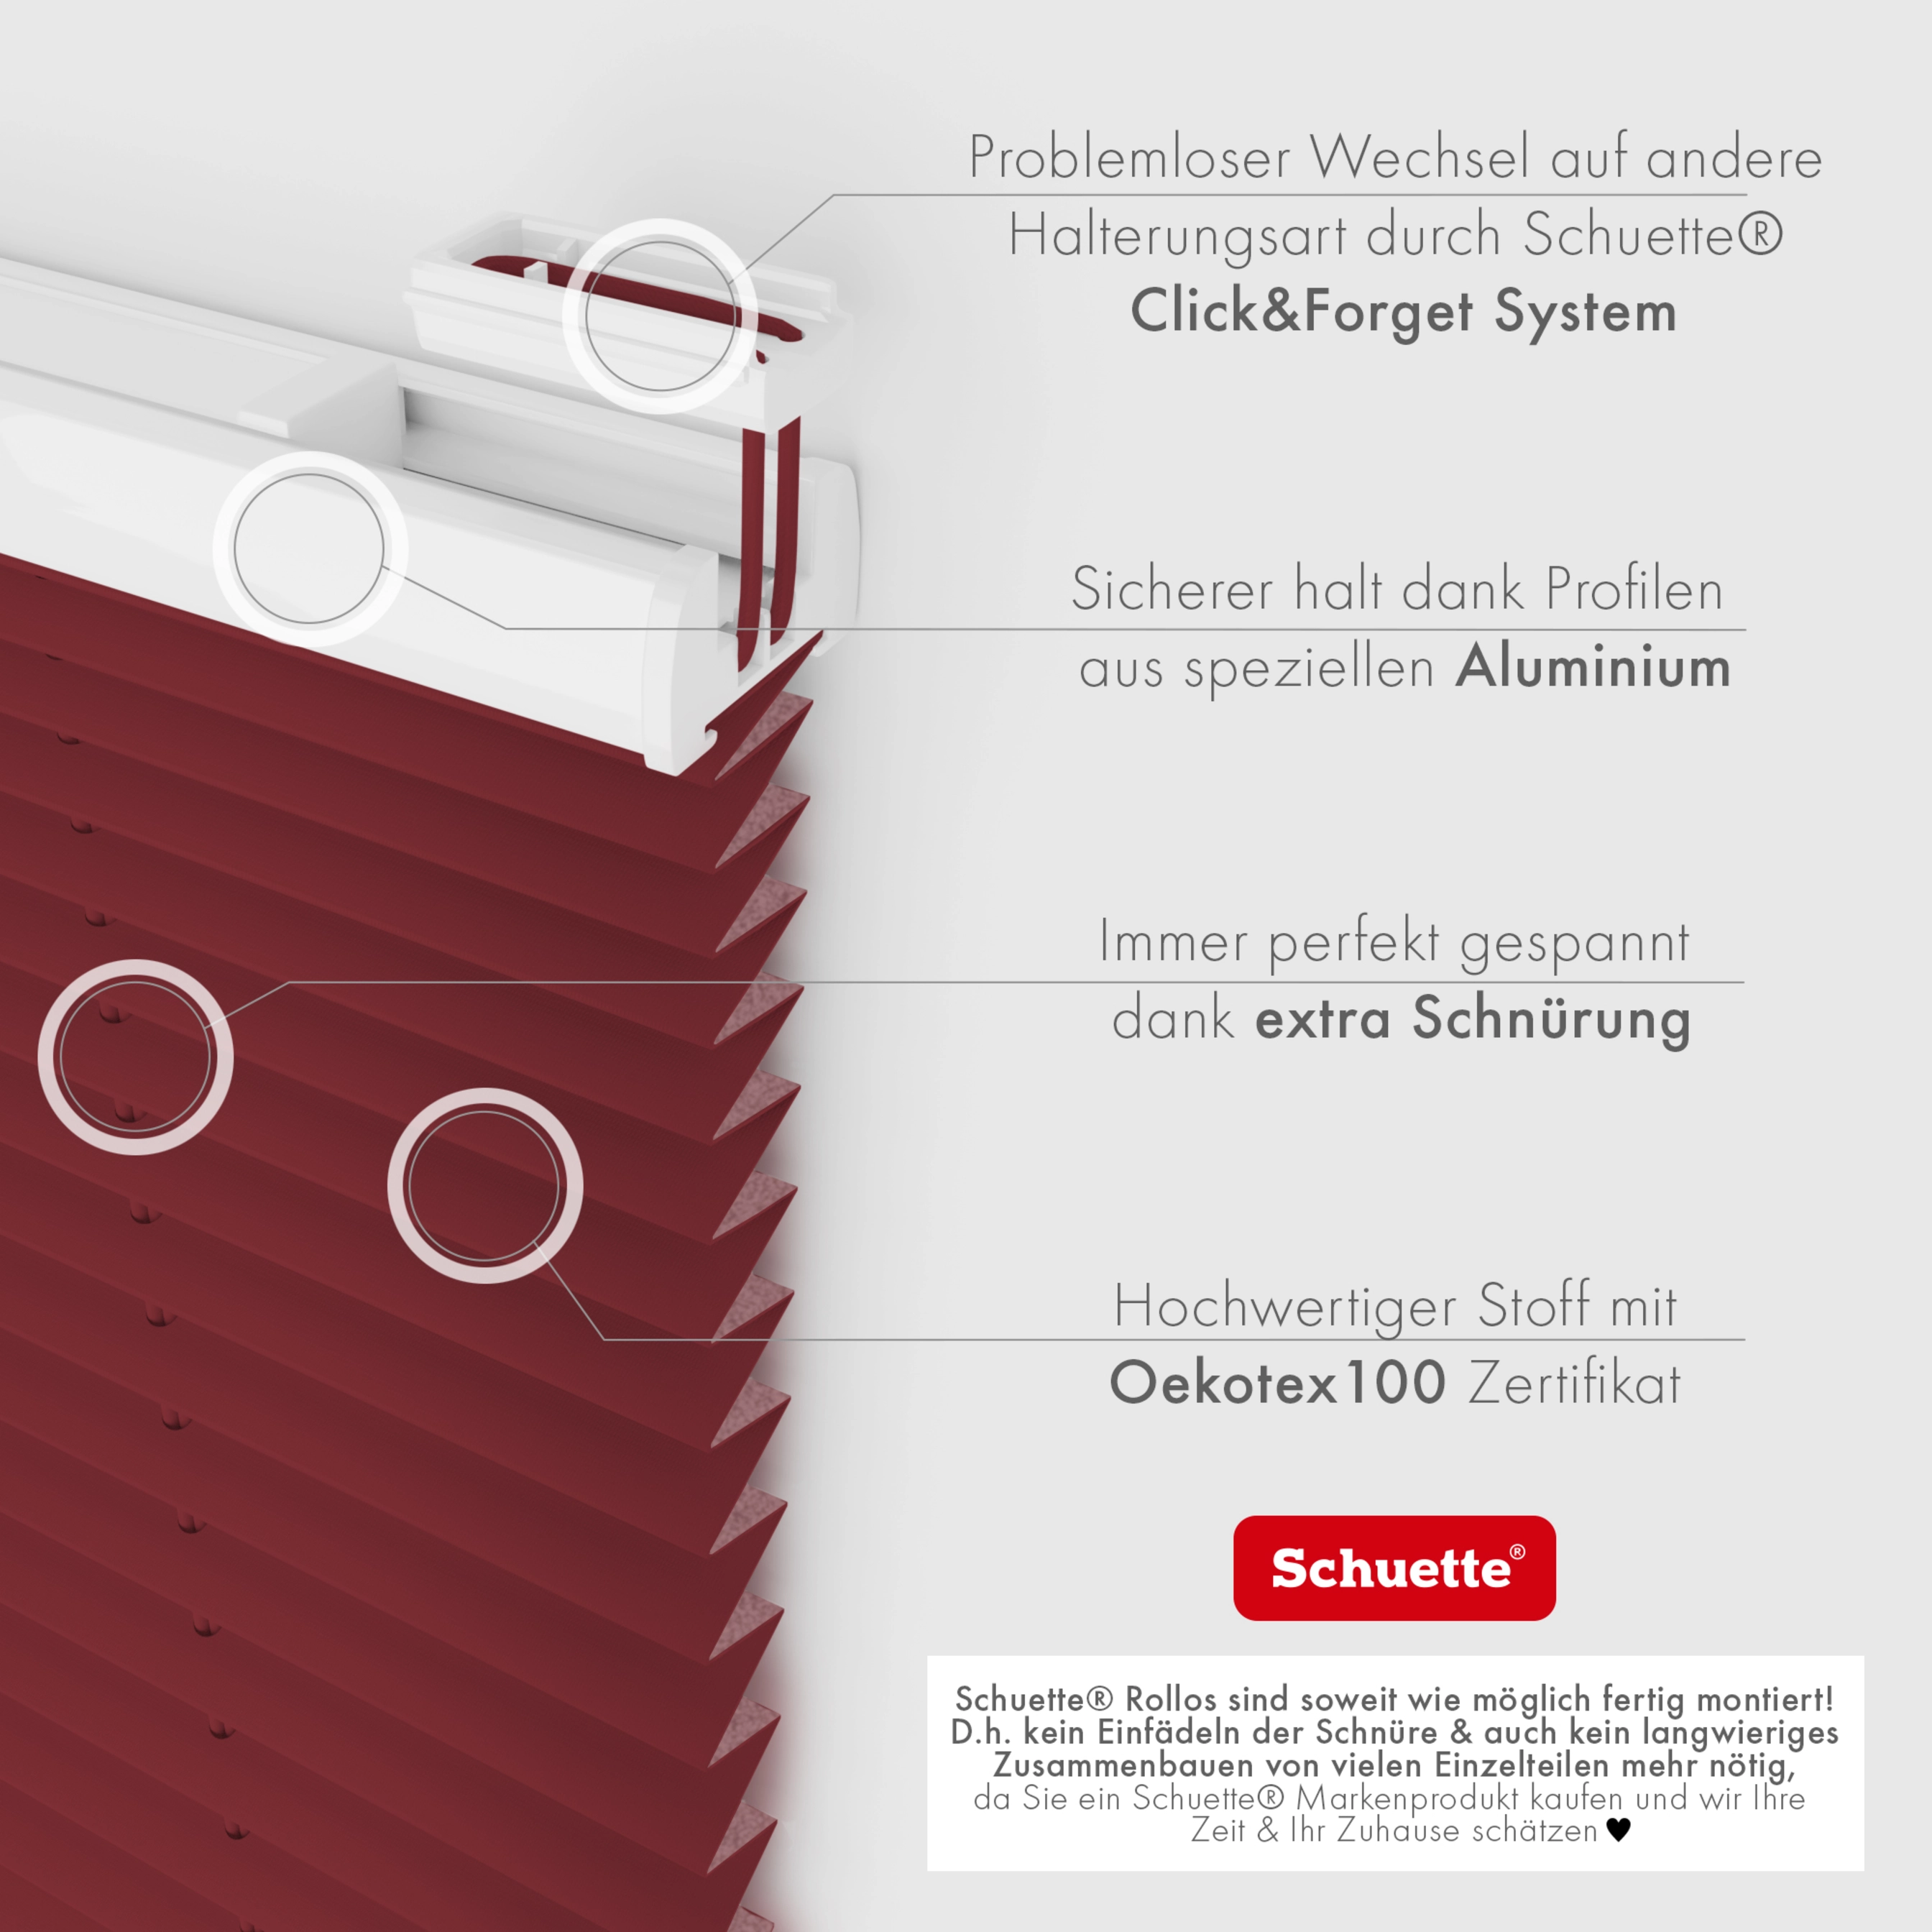 Schuette® Dachfenster Plissee nach Maß • Thermo Kollektion: Scarlet Wine (Rot) • Profilfarbe: Weiß